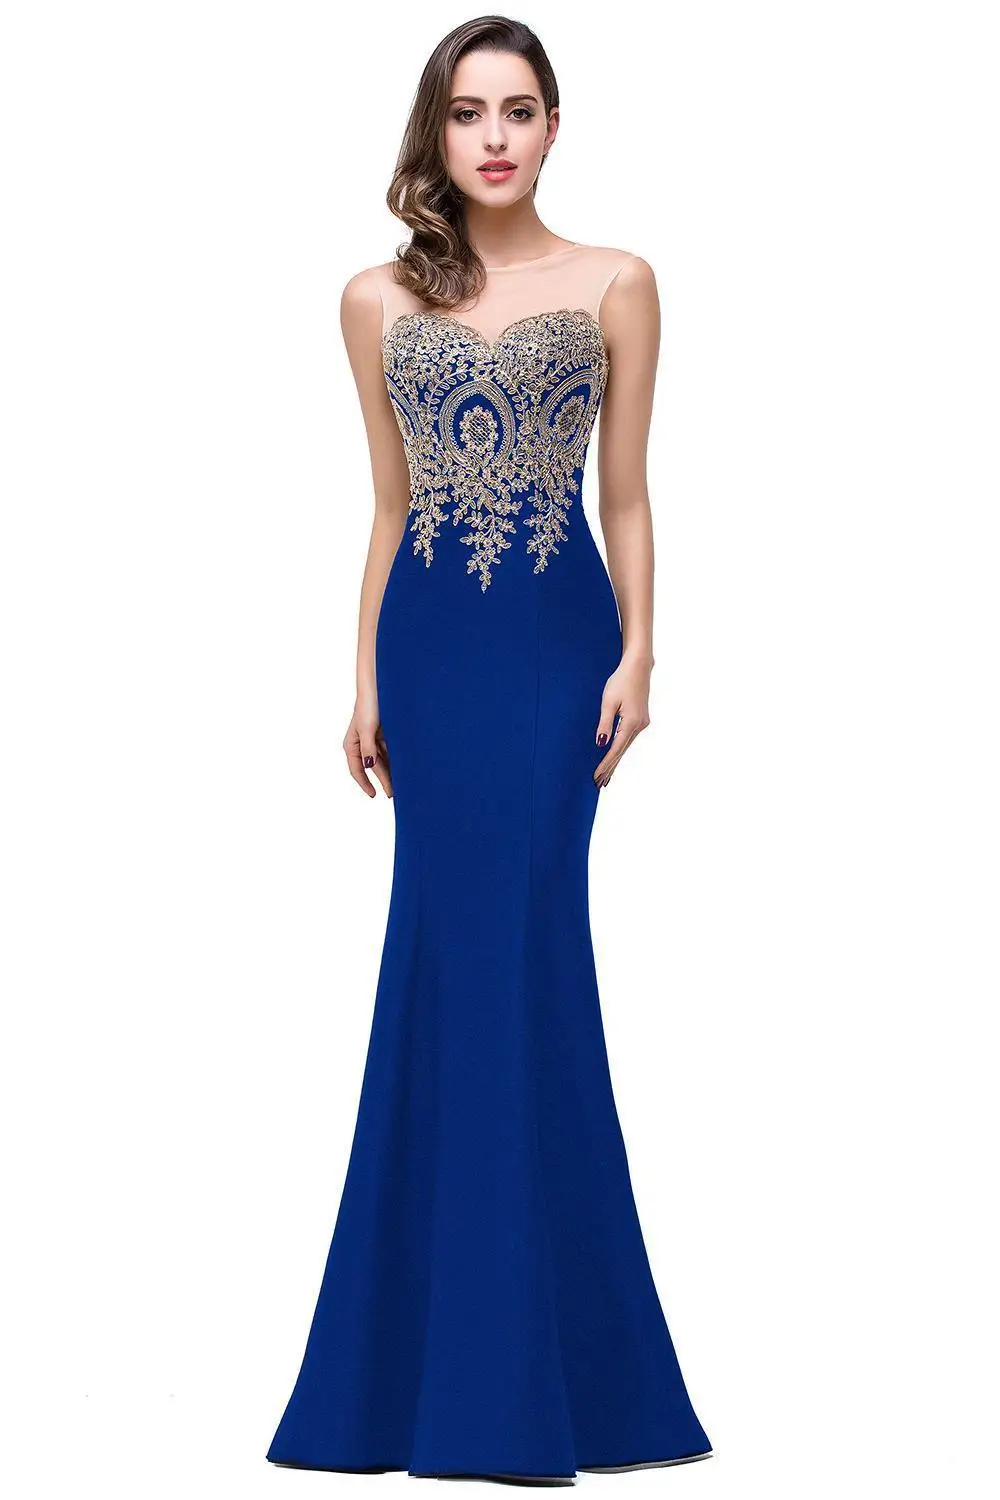 Babyonline Длинные Платья Вечерние Платья Королевского Синего Цвета С Аппликаций Бальное Кружевное Платье Для Подружка Невесты С Открытой Спиной Robe de Soiree - Цвет: royal blue